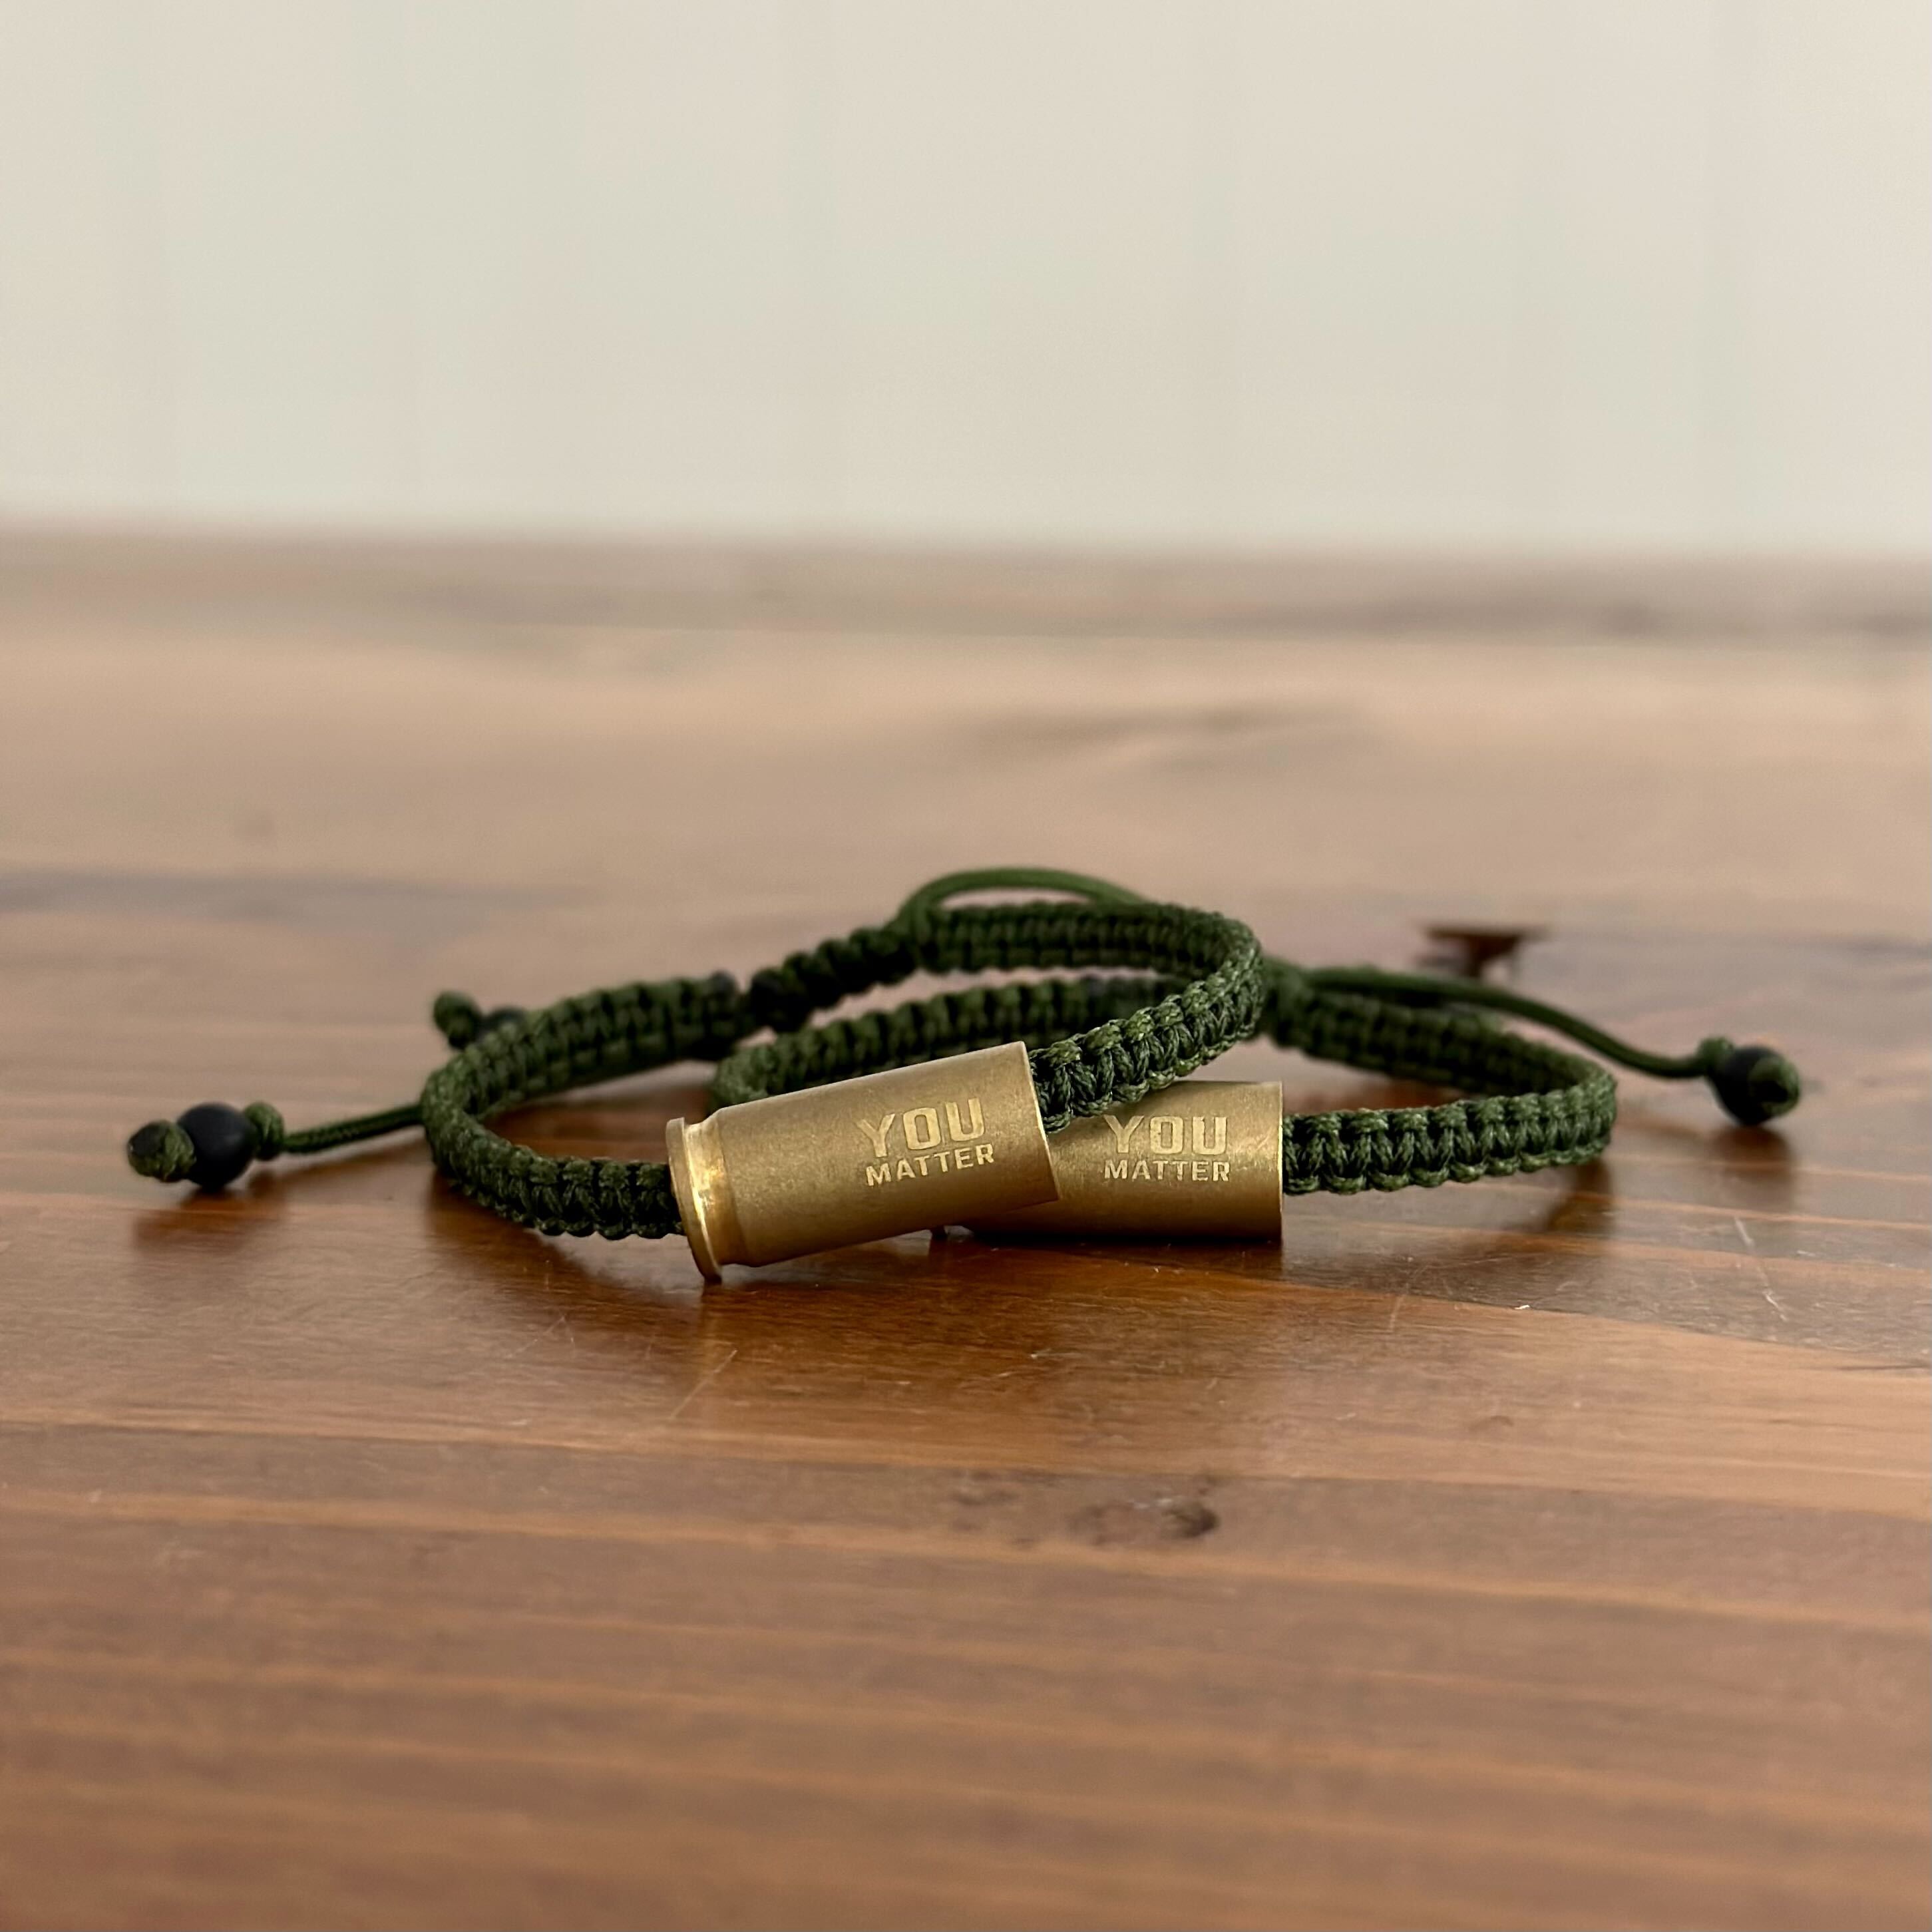 Bracelet Buddy Tool - You CAN Put On Bracelets By Yourself! – Key